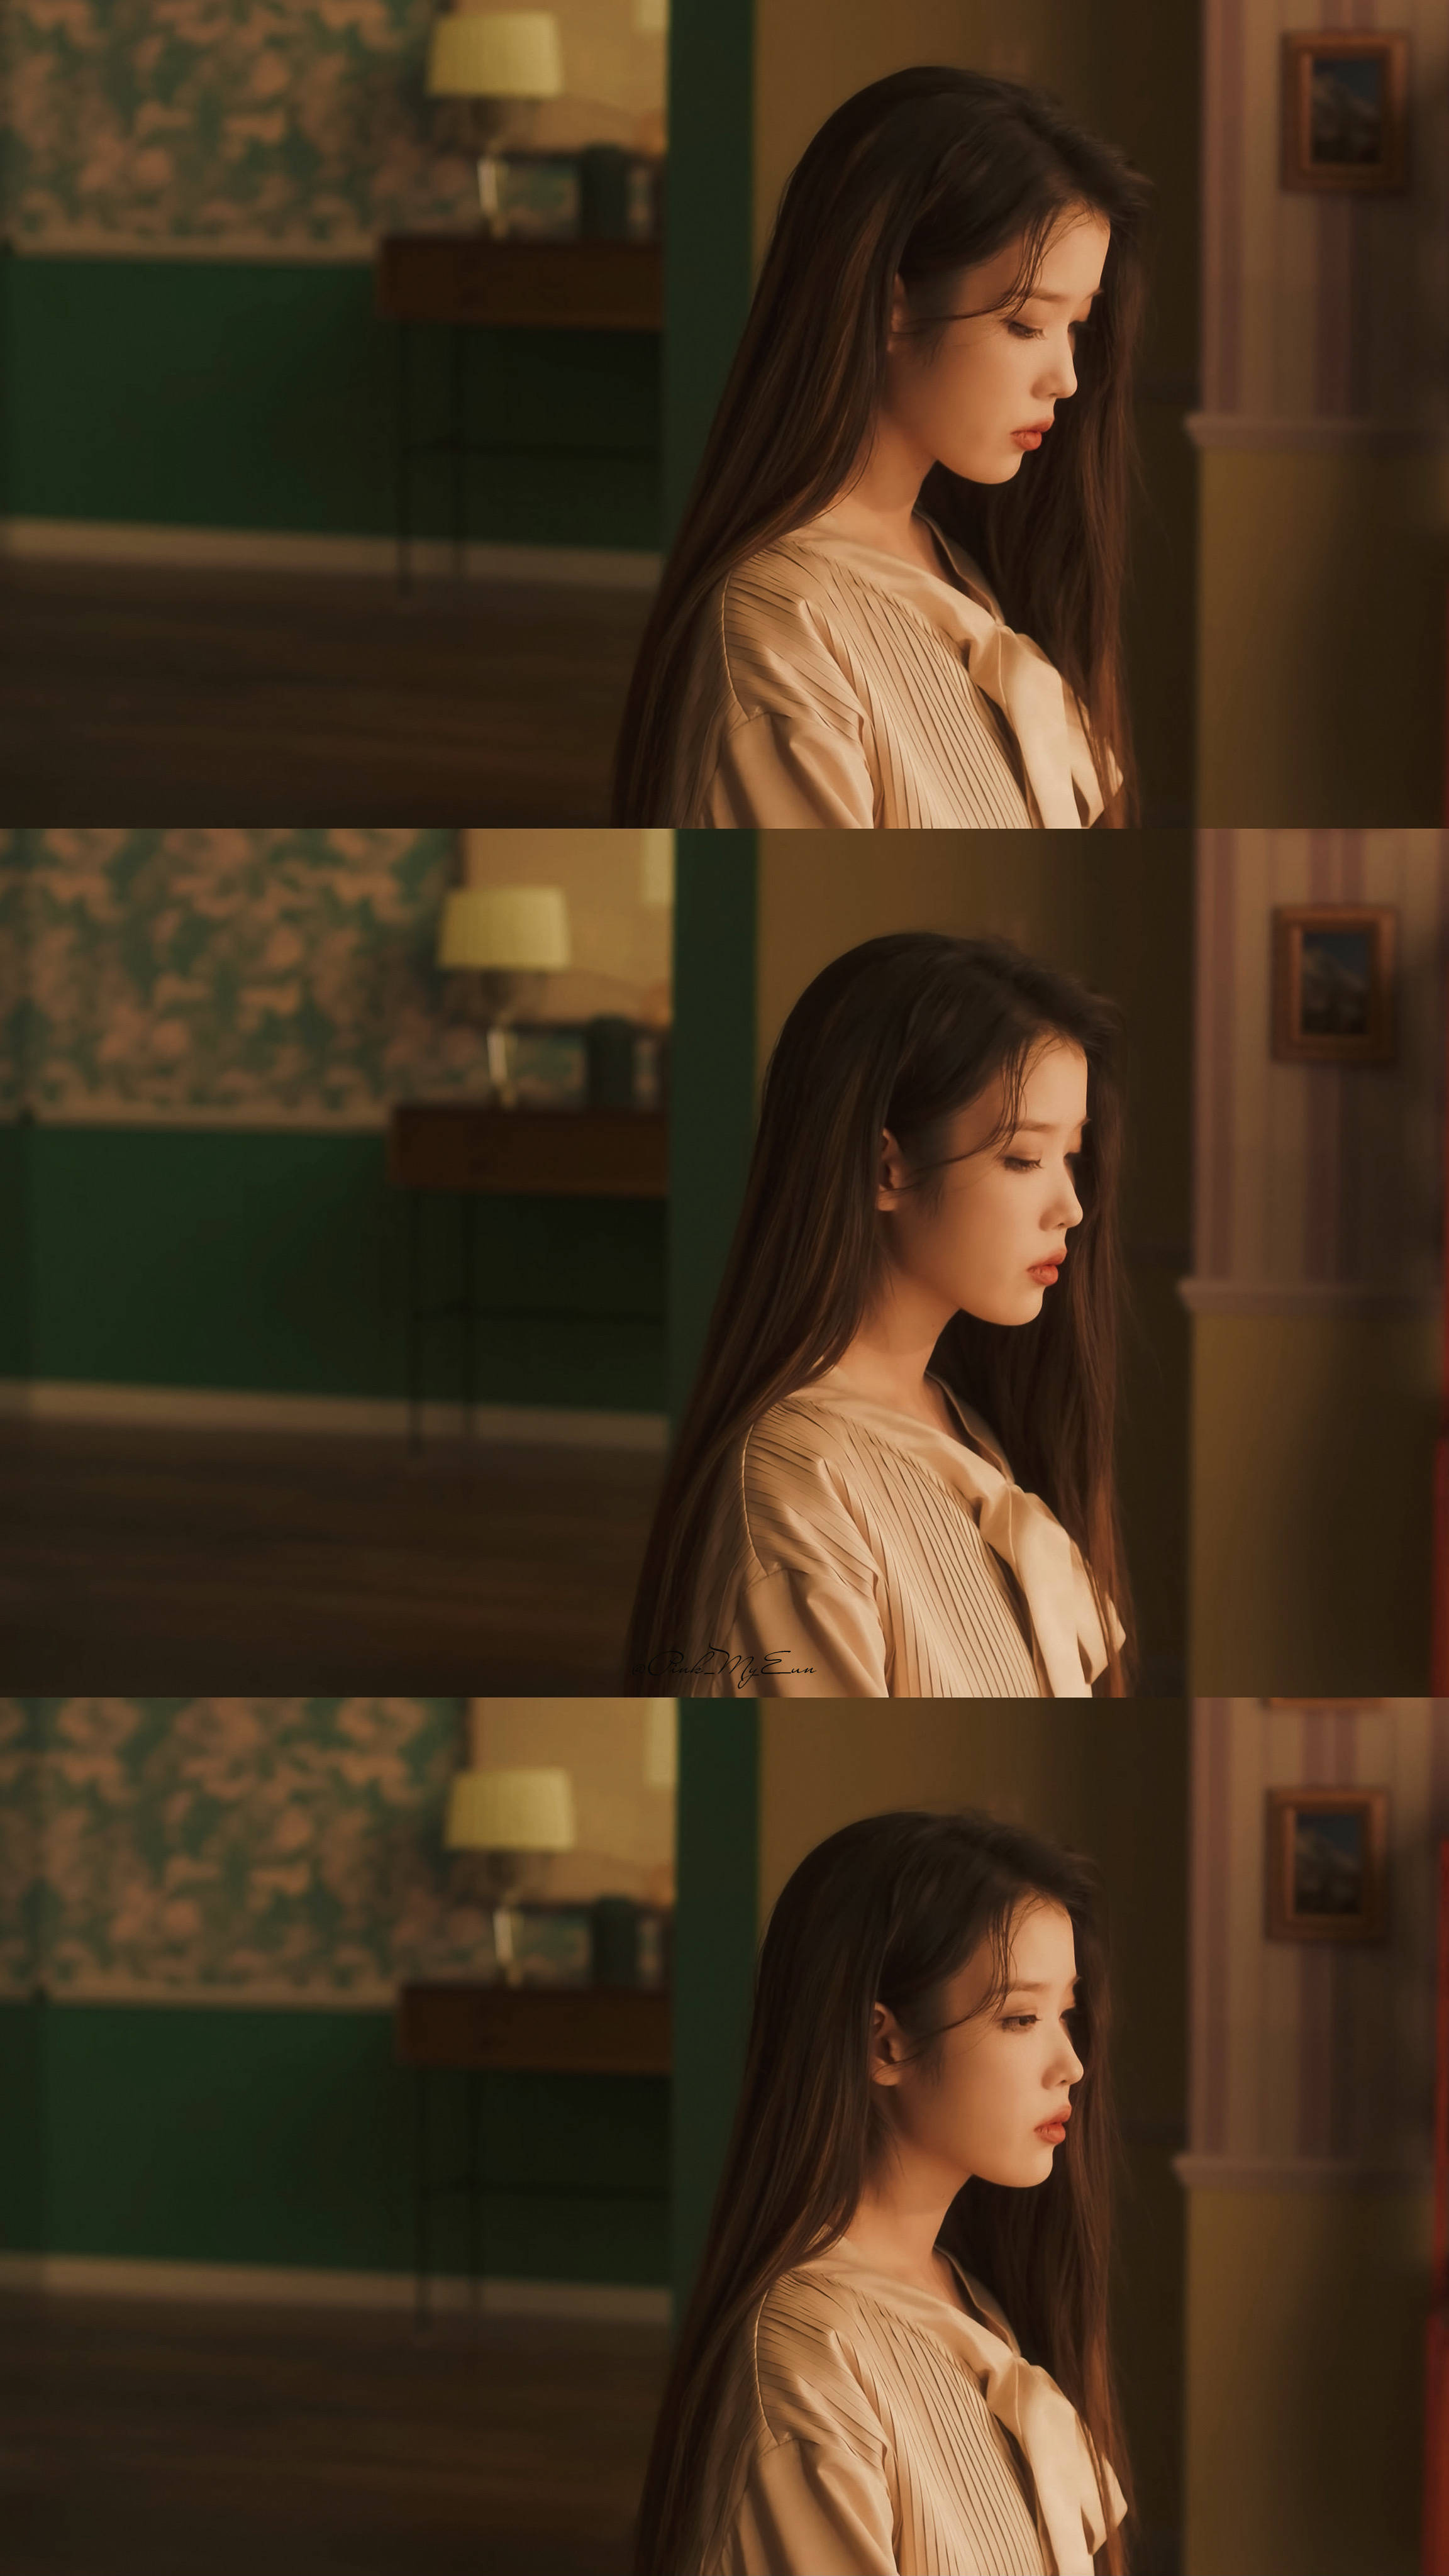 Iu Lee Ji Eun Asian Women Collage 2304x4096